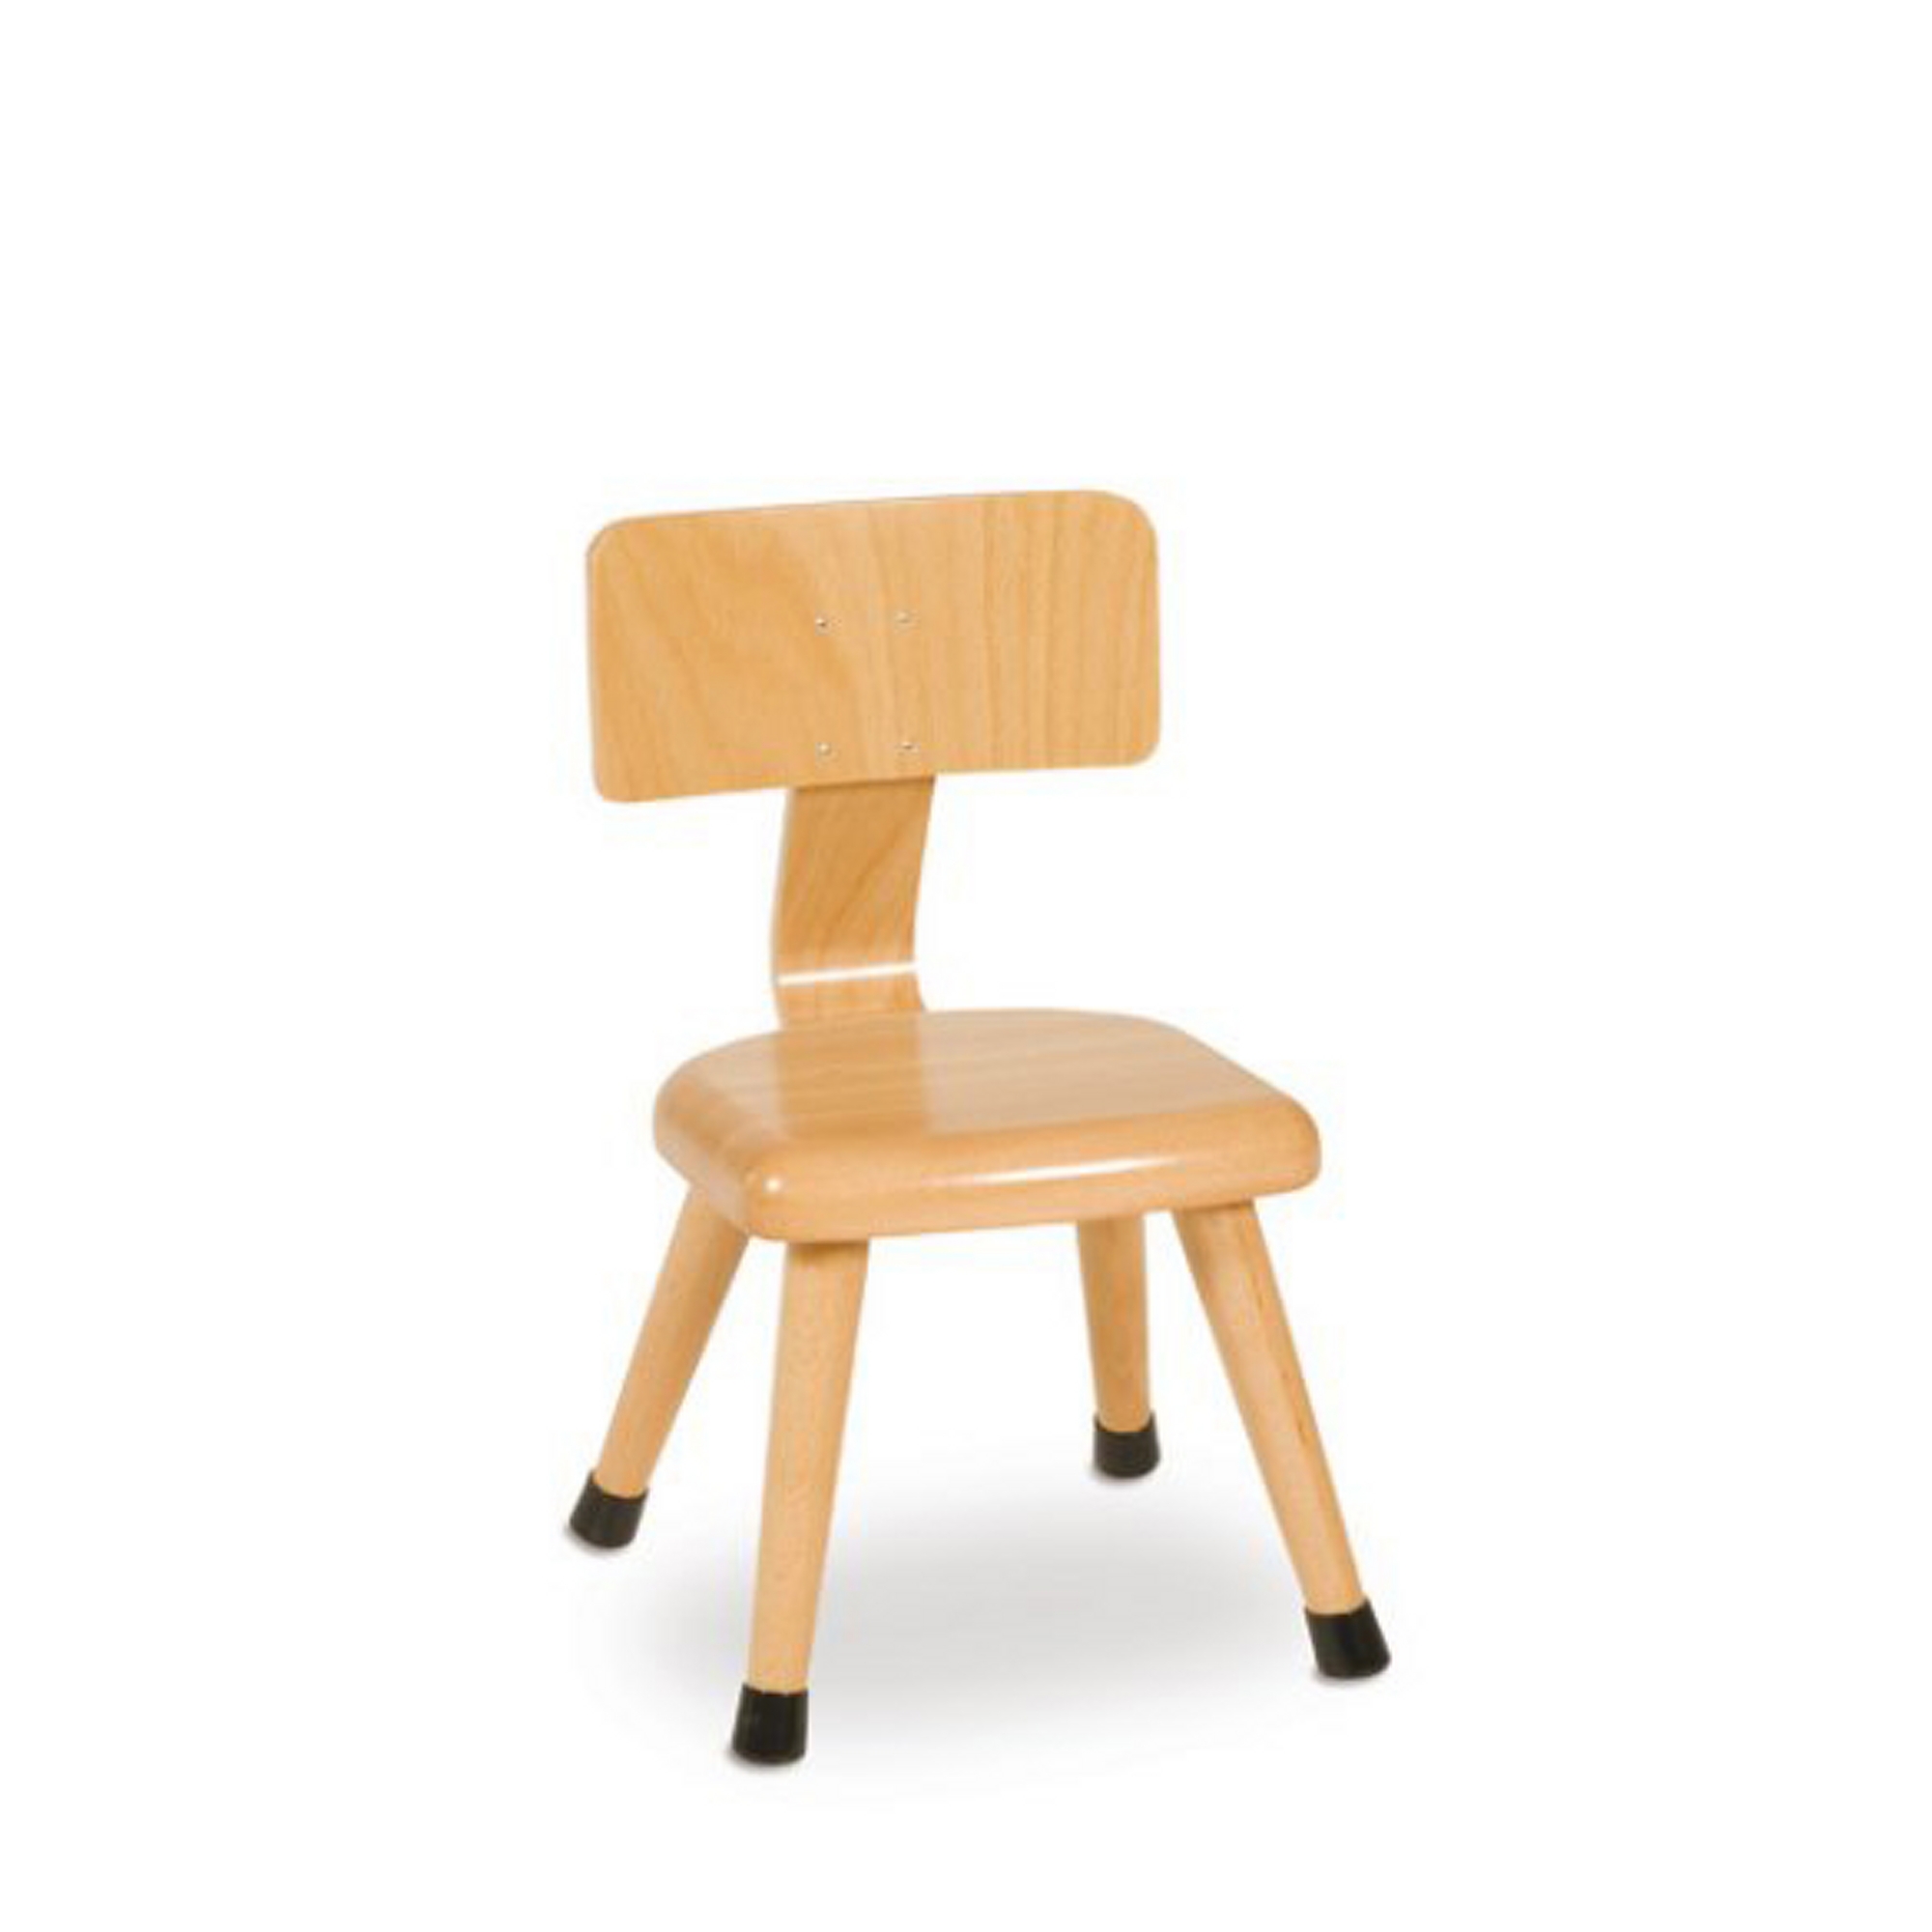 Chair - 20cm